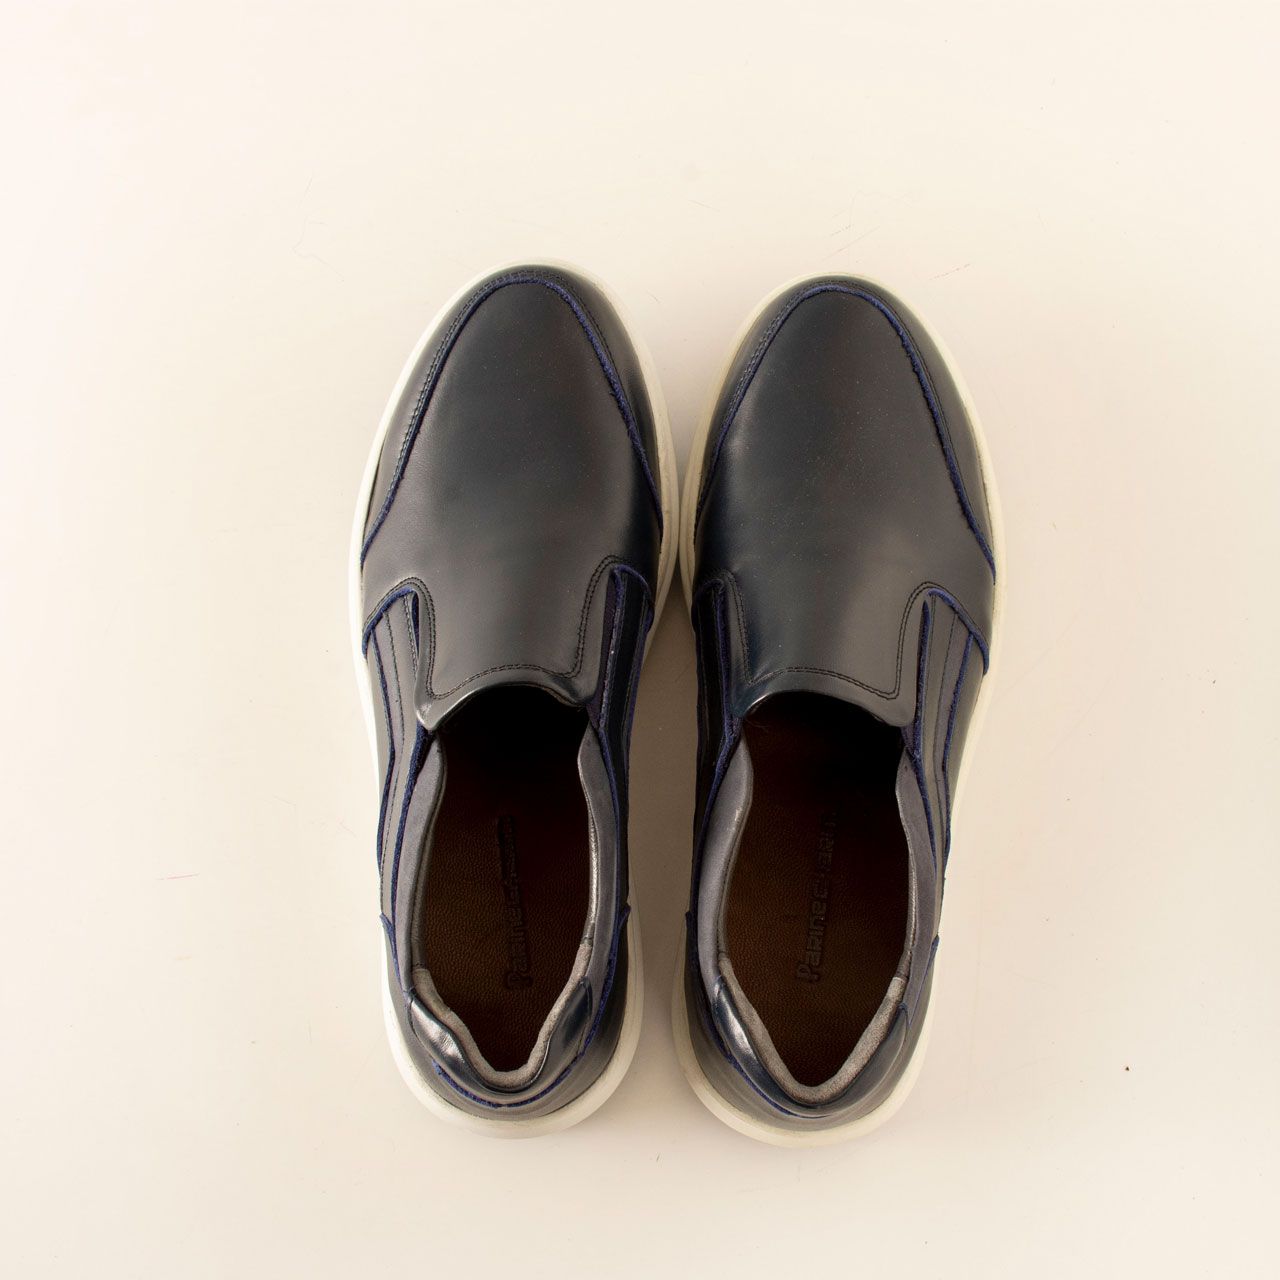  کفش روزمره مردانه پارینه چرم مدل SHO194-11 -  - 6